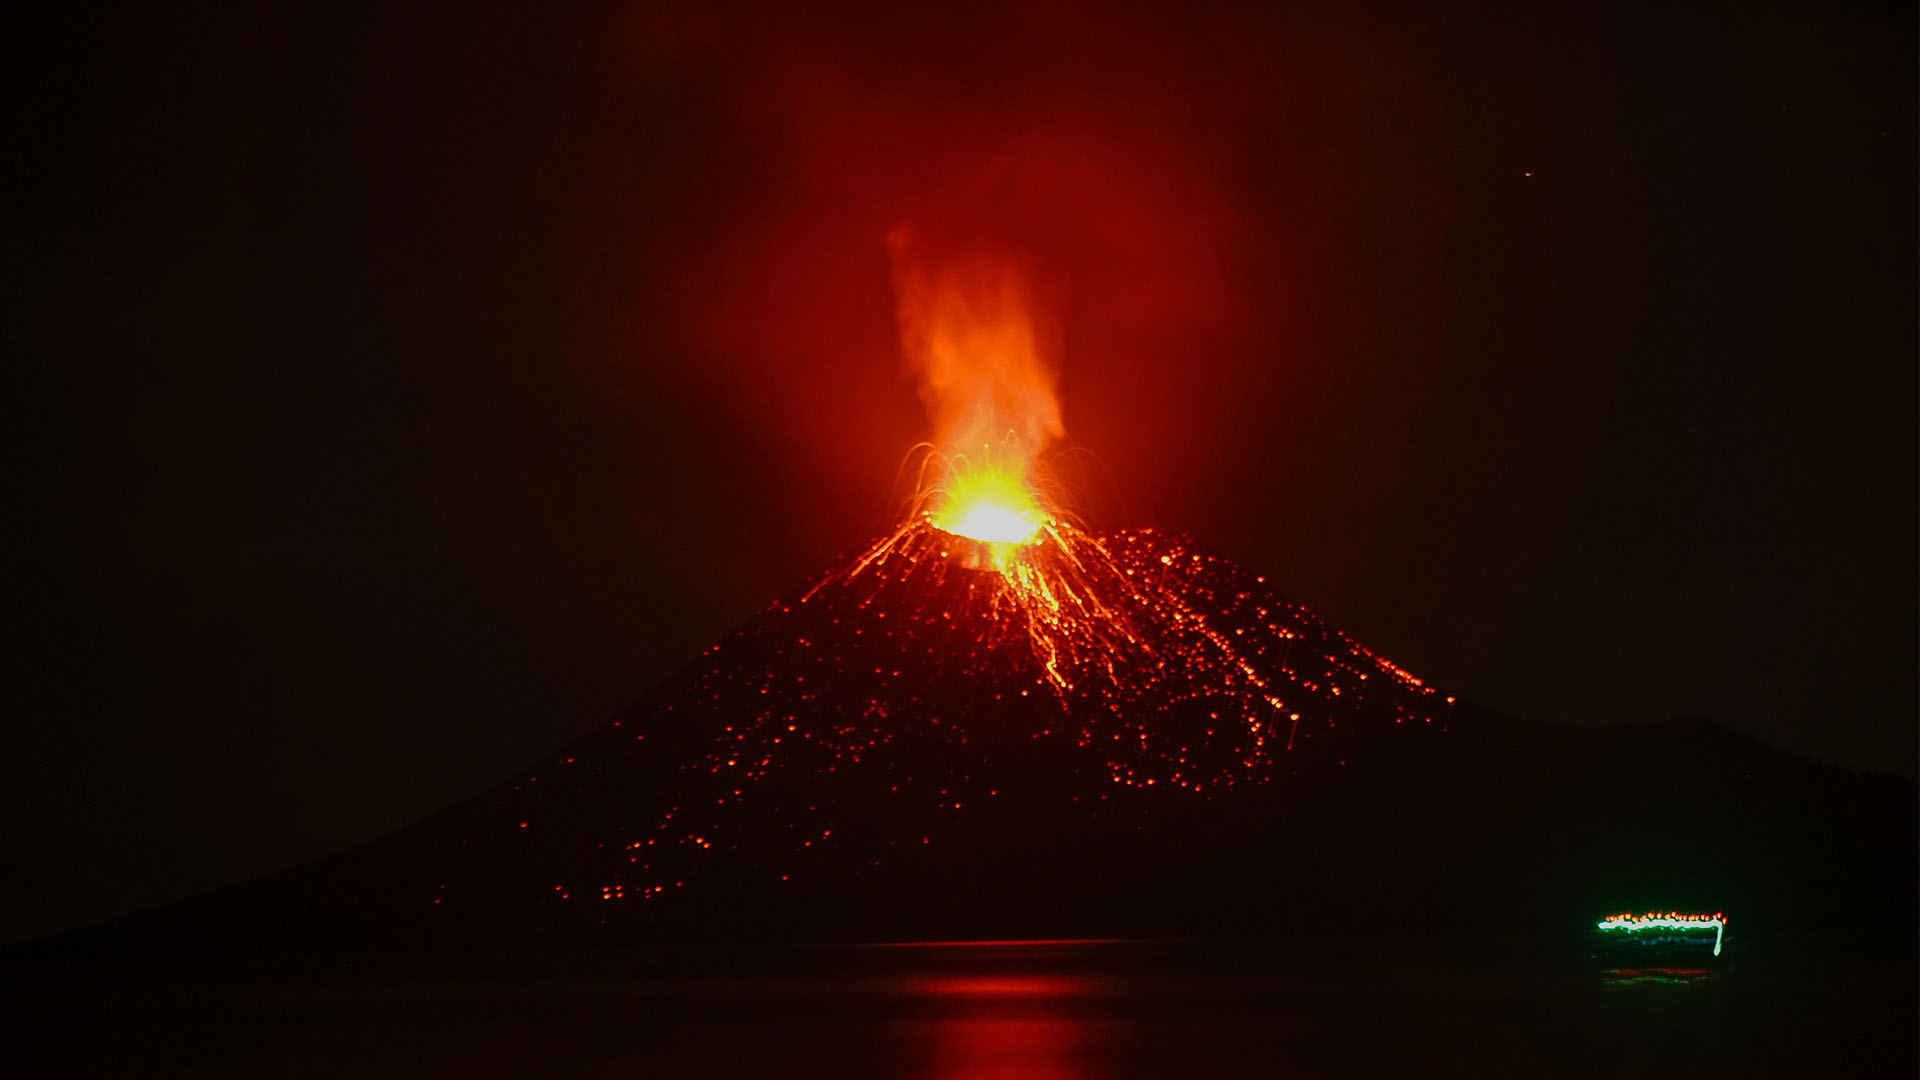 1 пример извержения вулкана